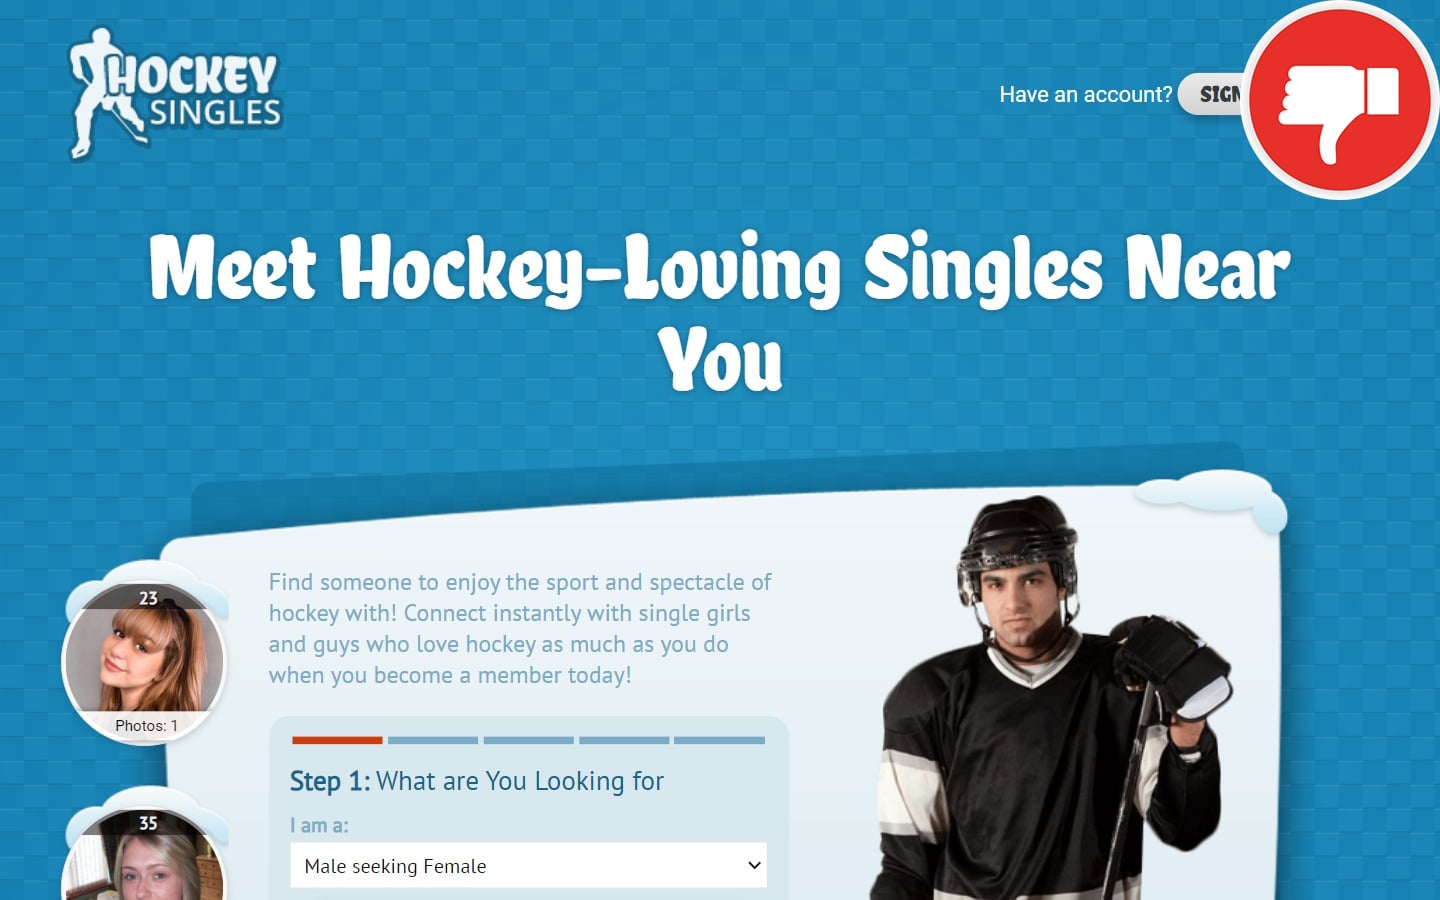 Review HockeySingles.com scam experience